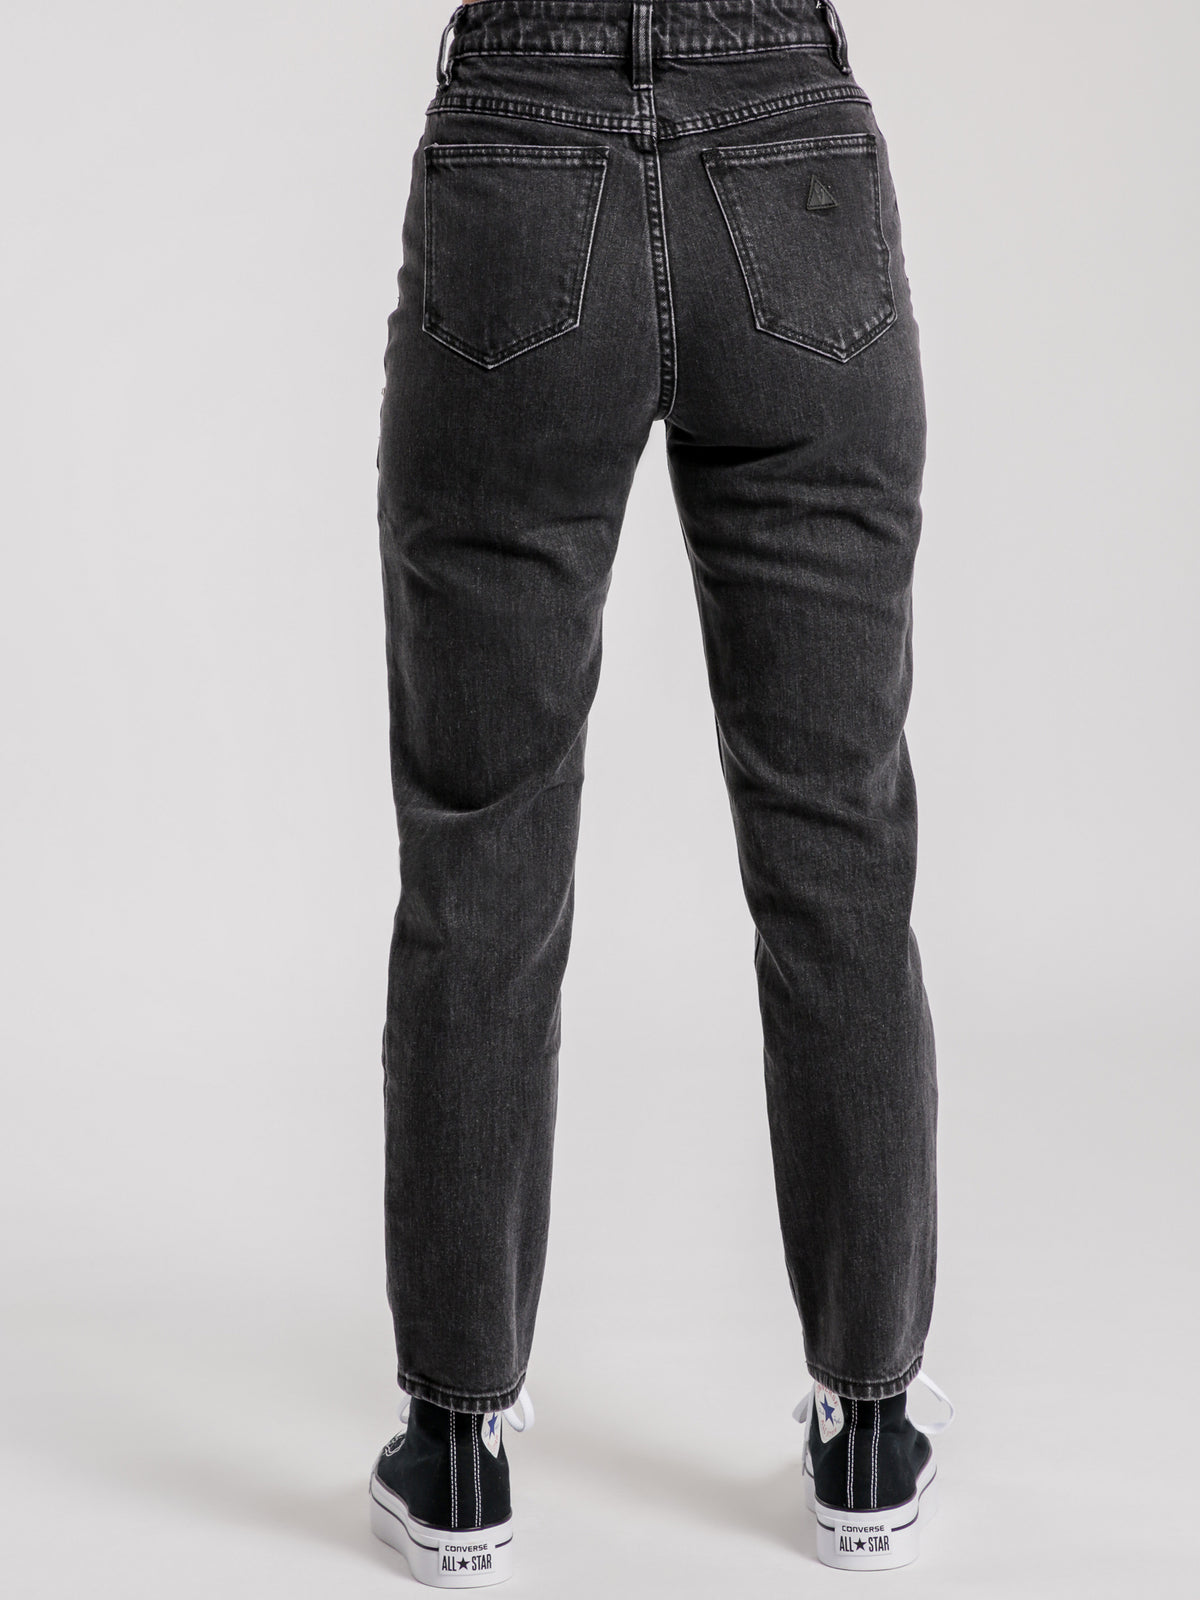 94 High Slim Jeans in Stud Lover Black Denim